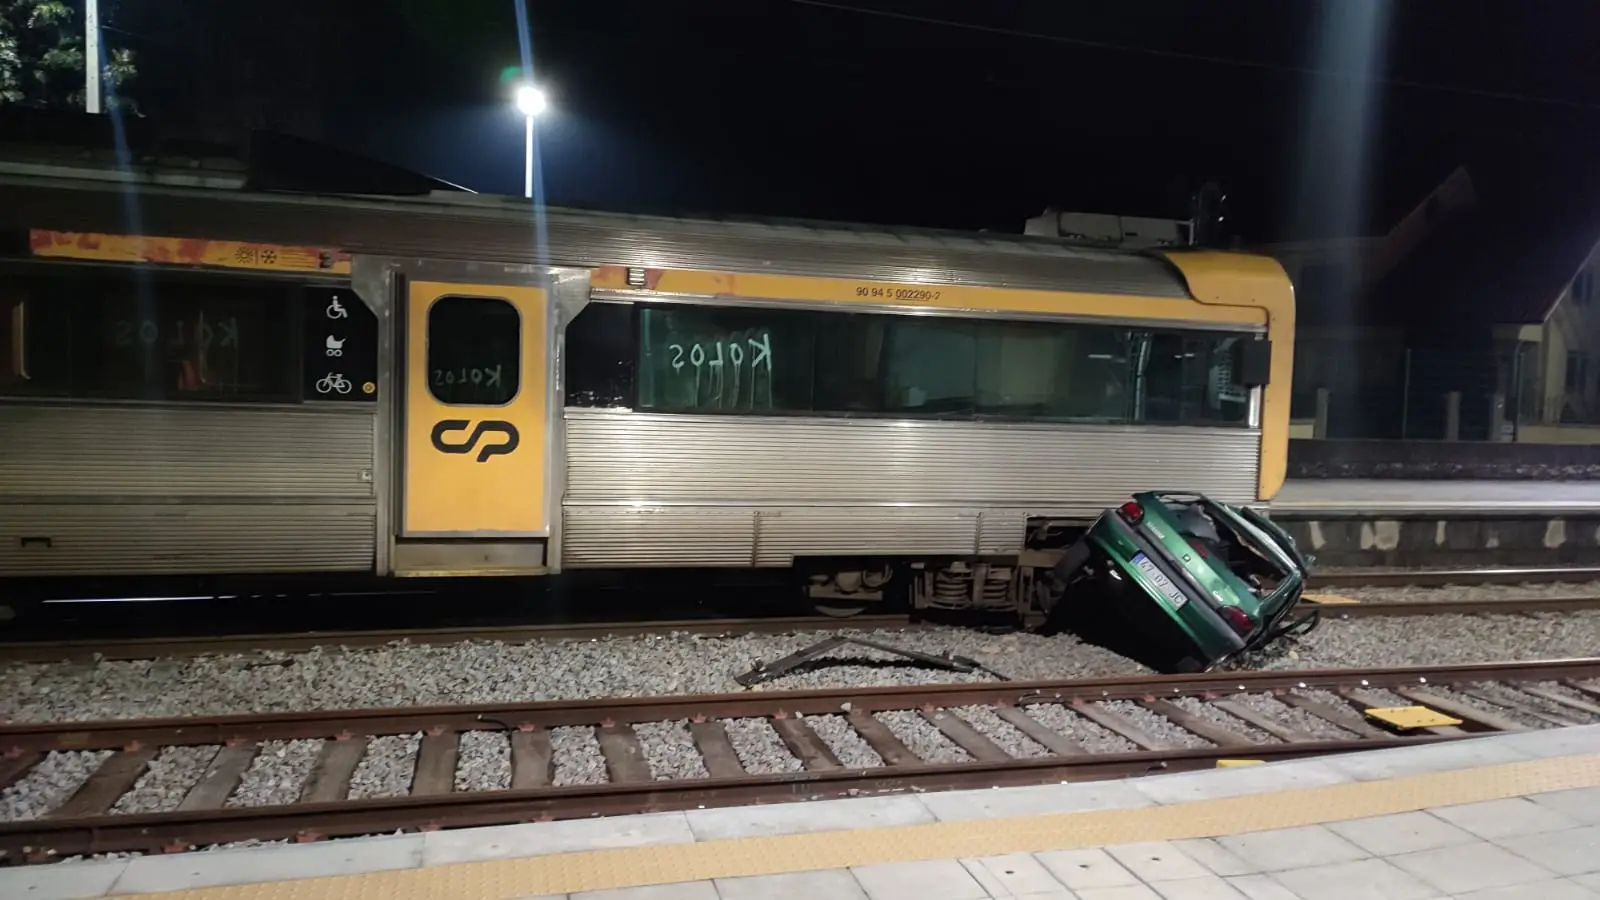 Abalroamento entre comboio e viatura ligeira em Valença